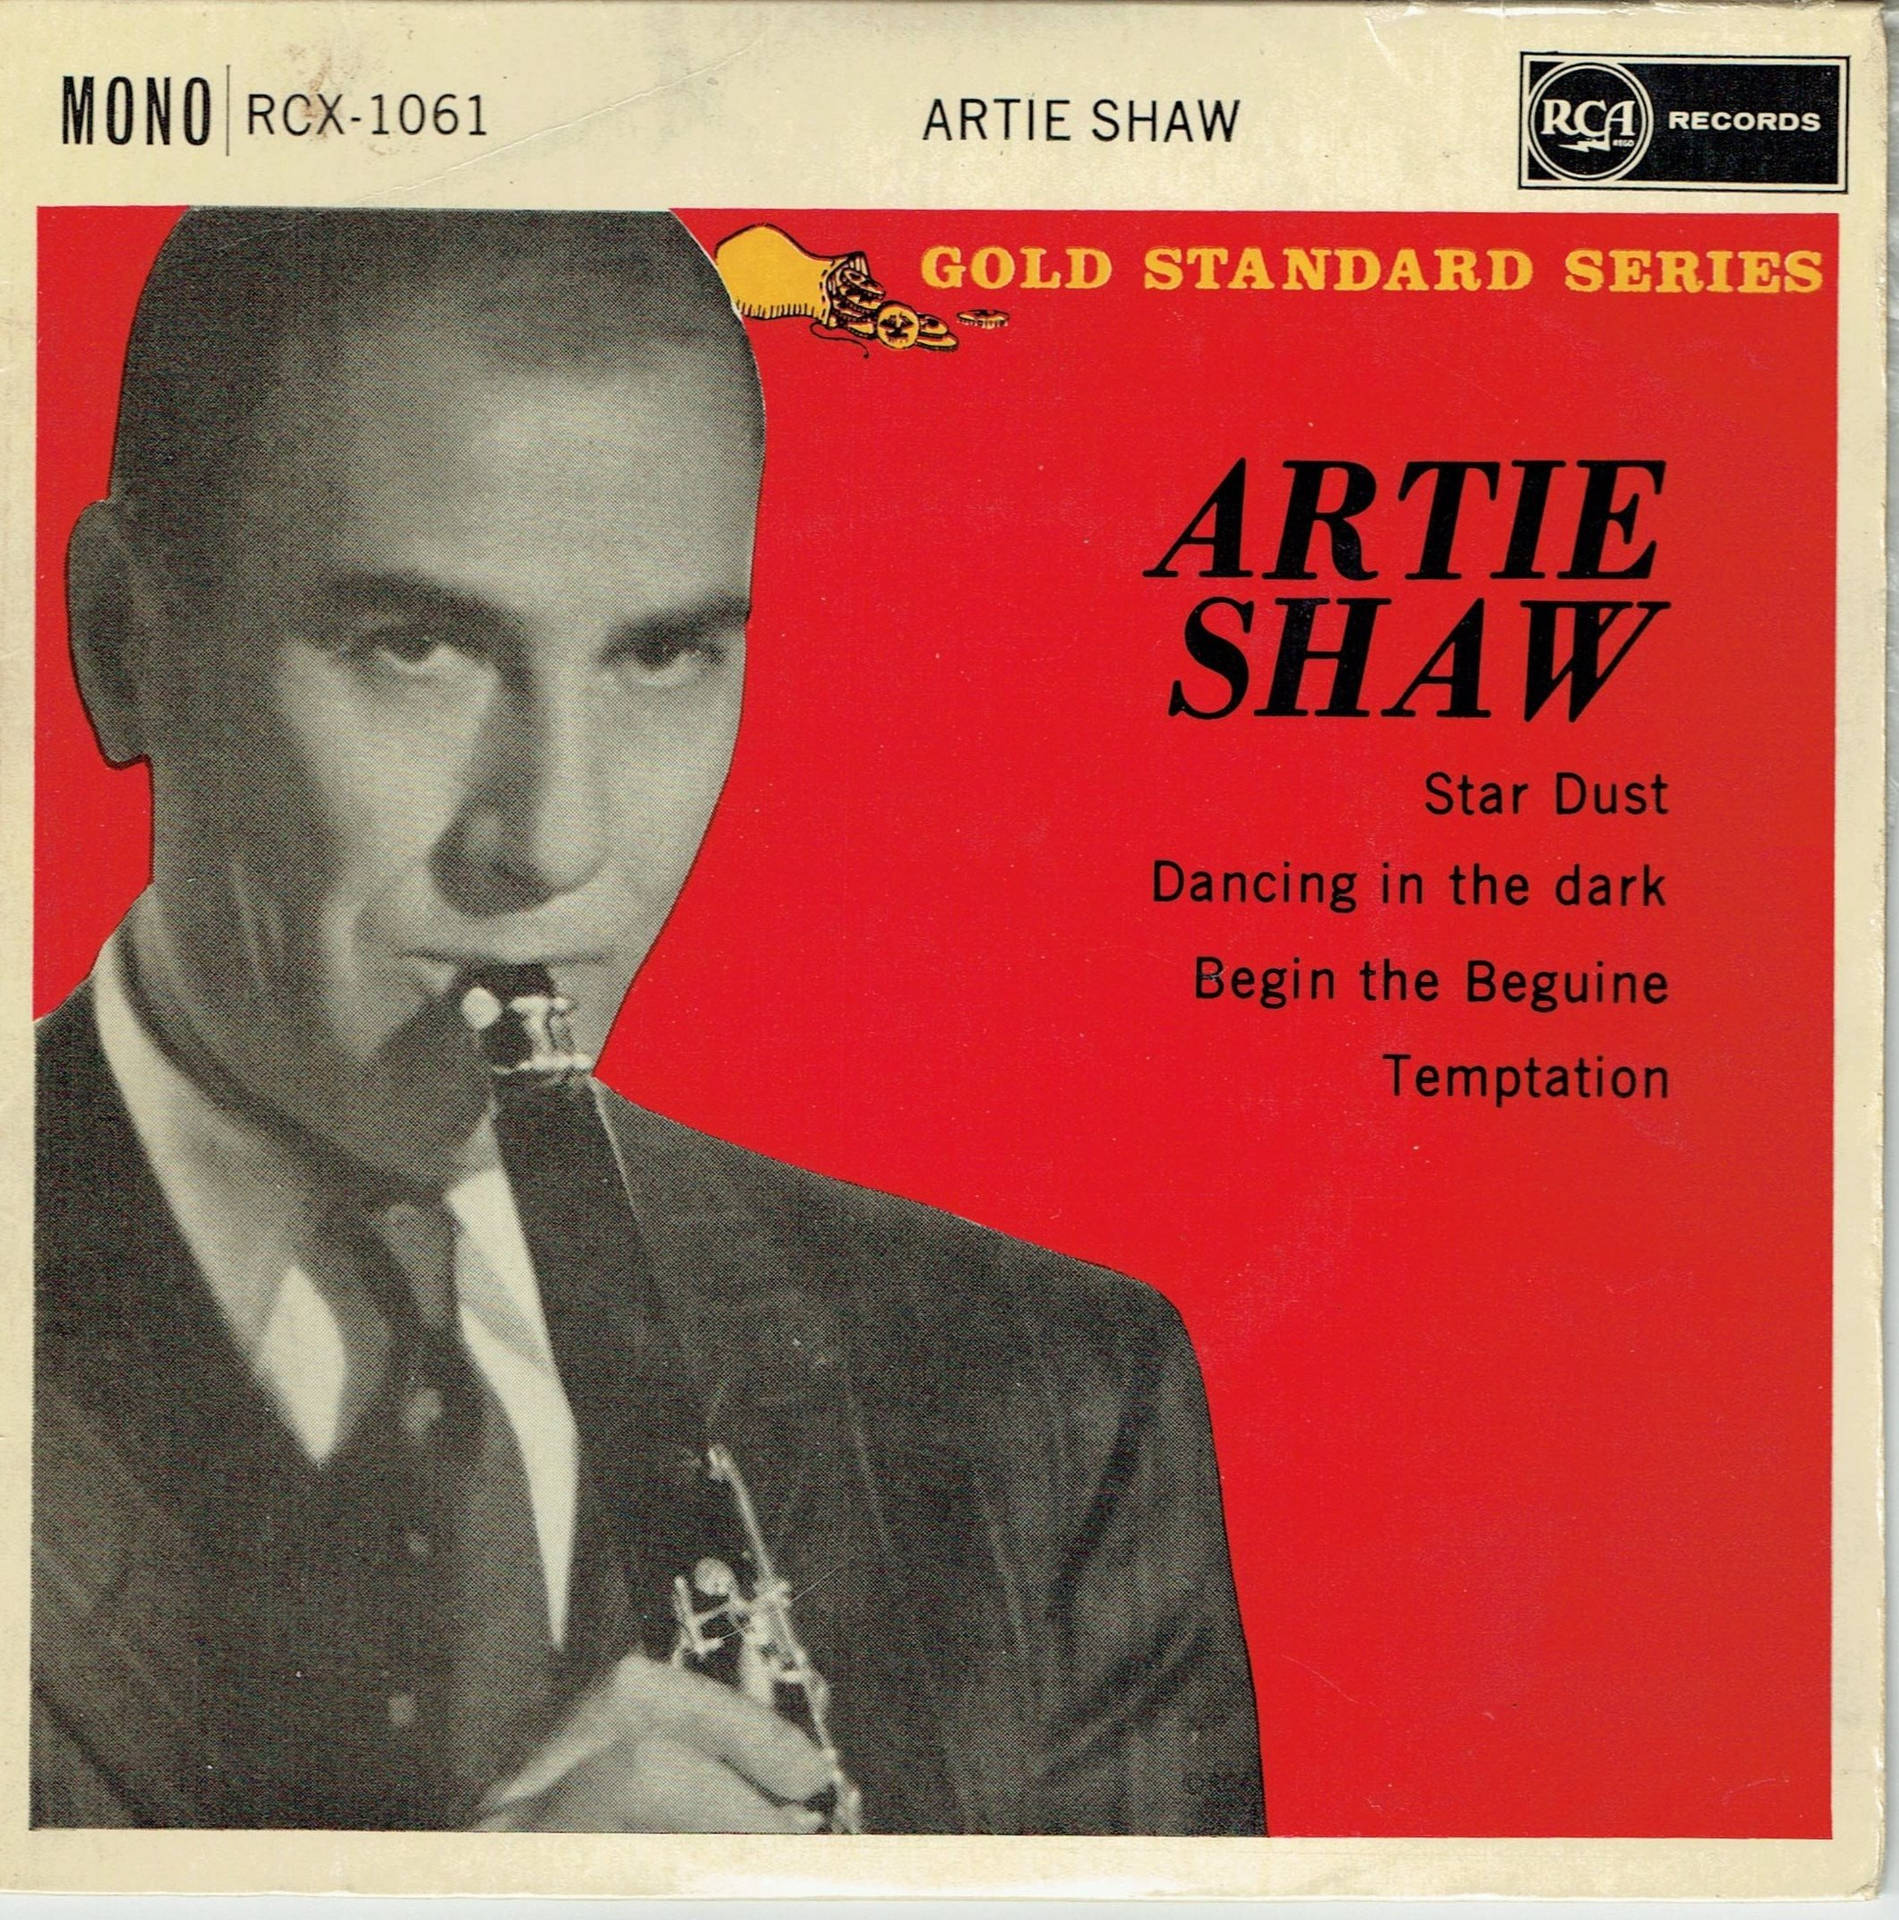 Legendary Jazz Musician Artie Shaw's Gold Standard Series Album Cover Wallpaper